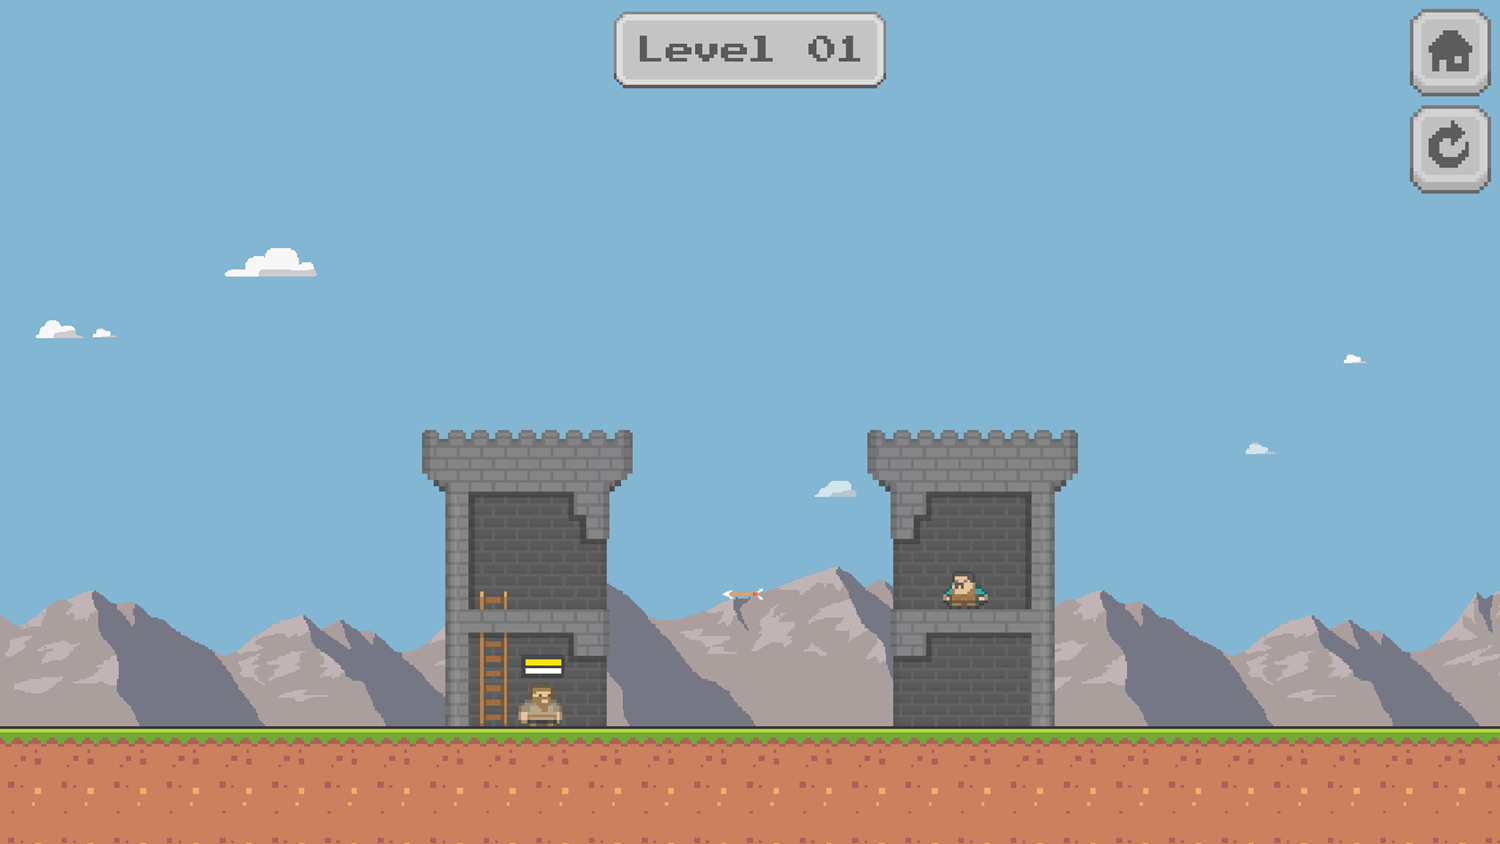 Pixel Tower Battle Game Level Start Screenshot.